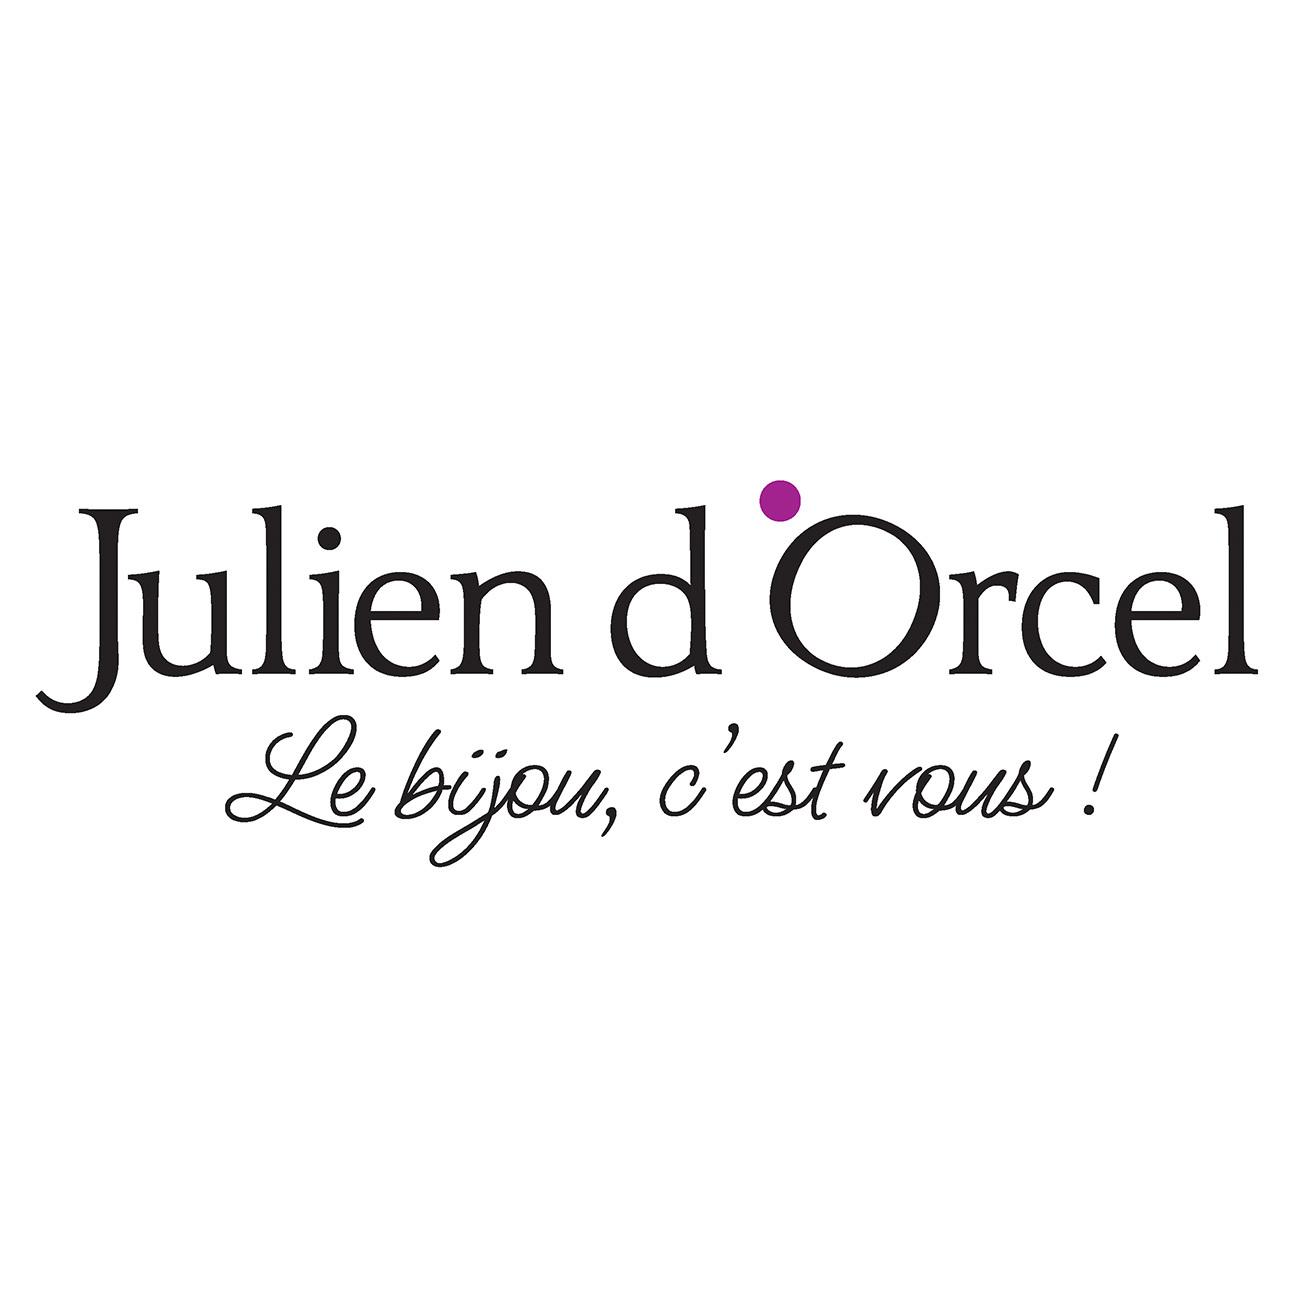 Julien D'orcel Guichainville